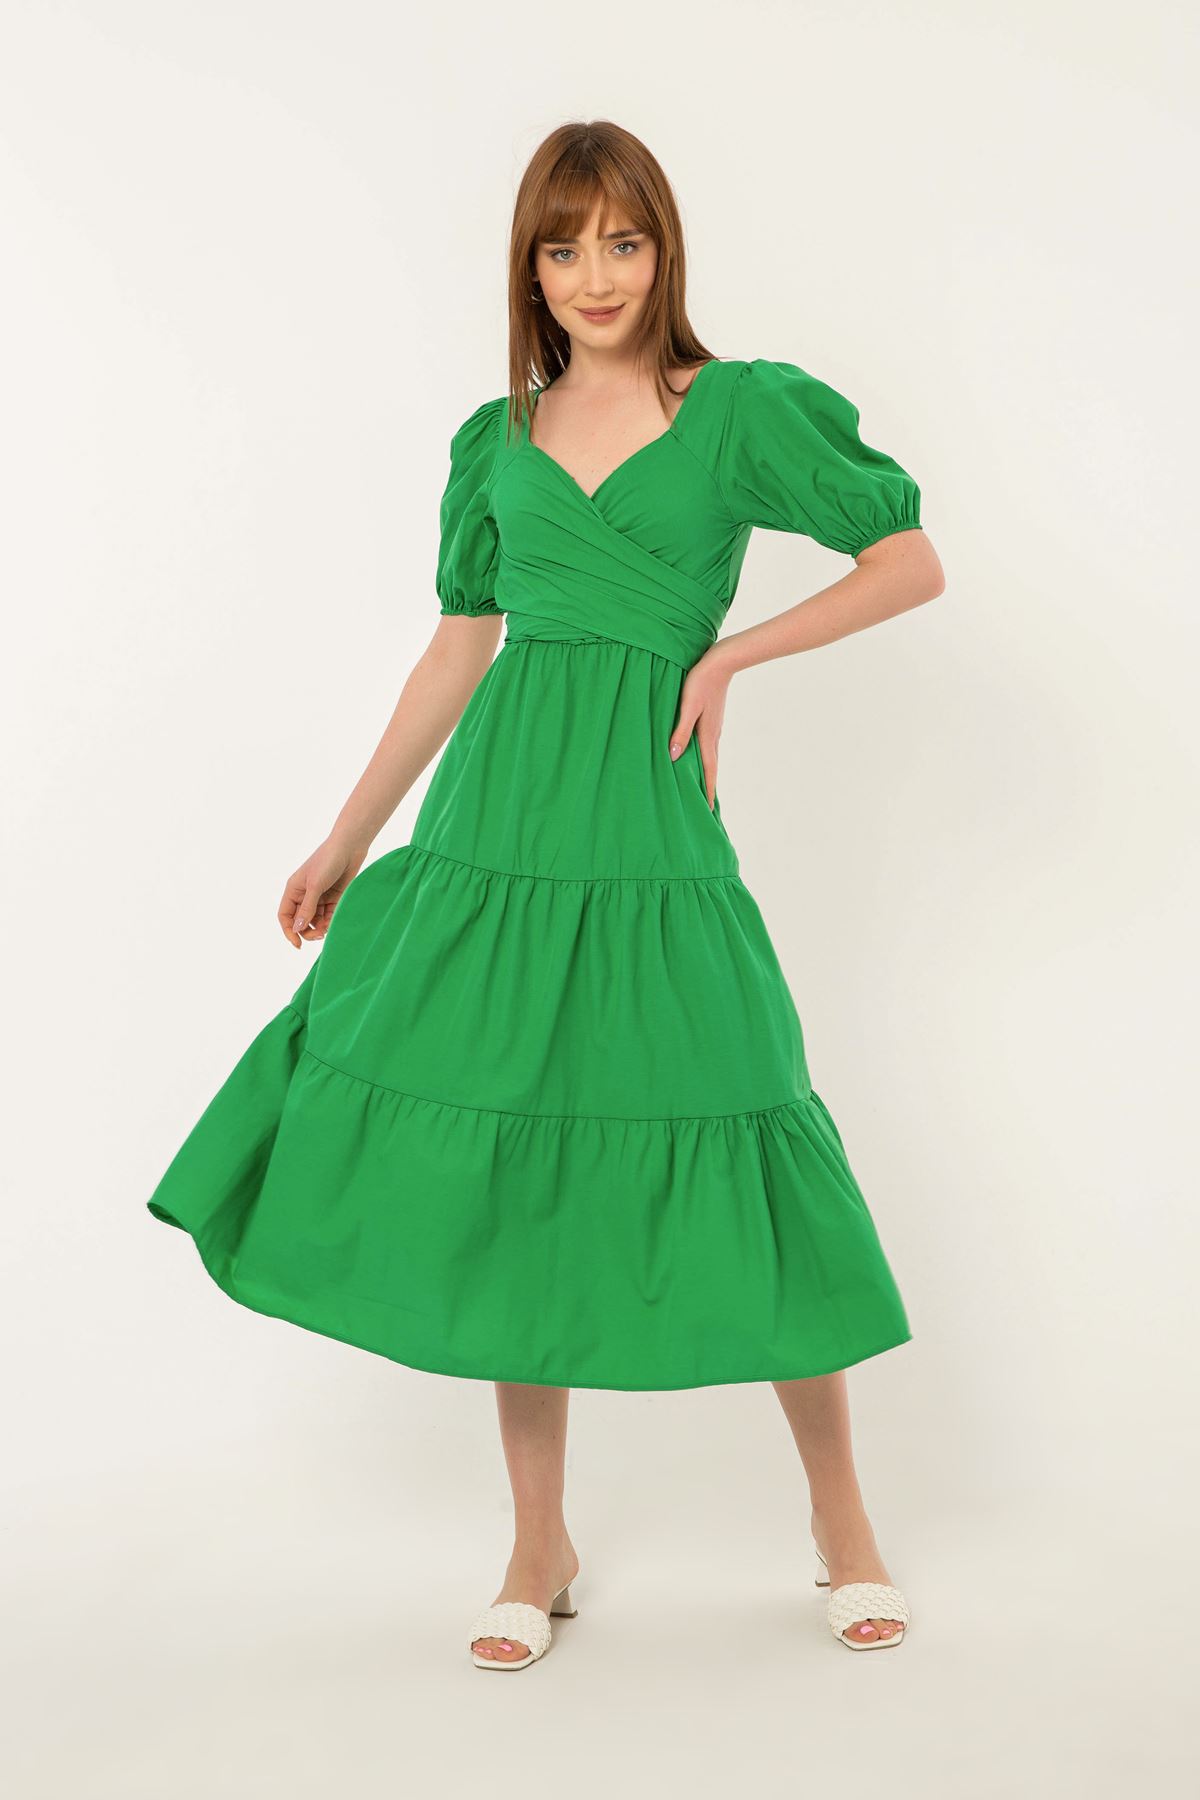 Soft Kumaş Balon Kol Bağlama Detaylı Kadın Elbise-Yeşil